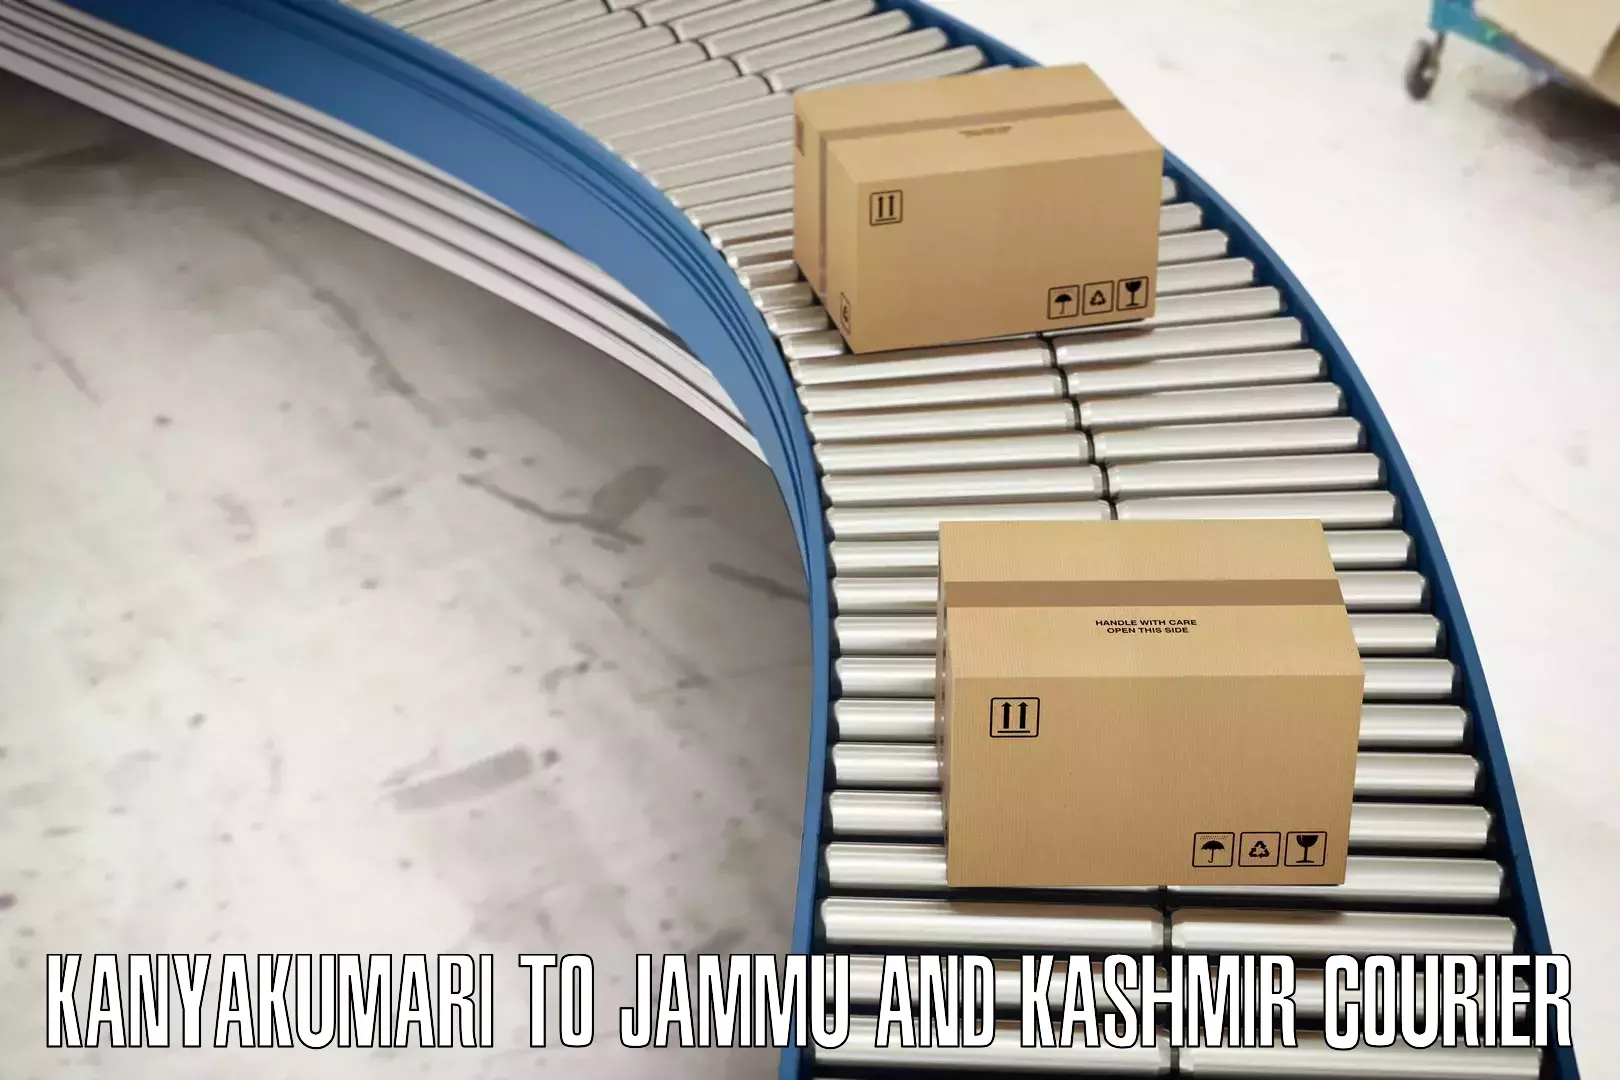 Corporate courier solutions Kanyakumari to Jammu and Kashmir